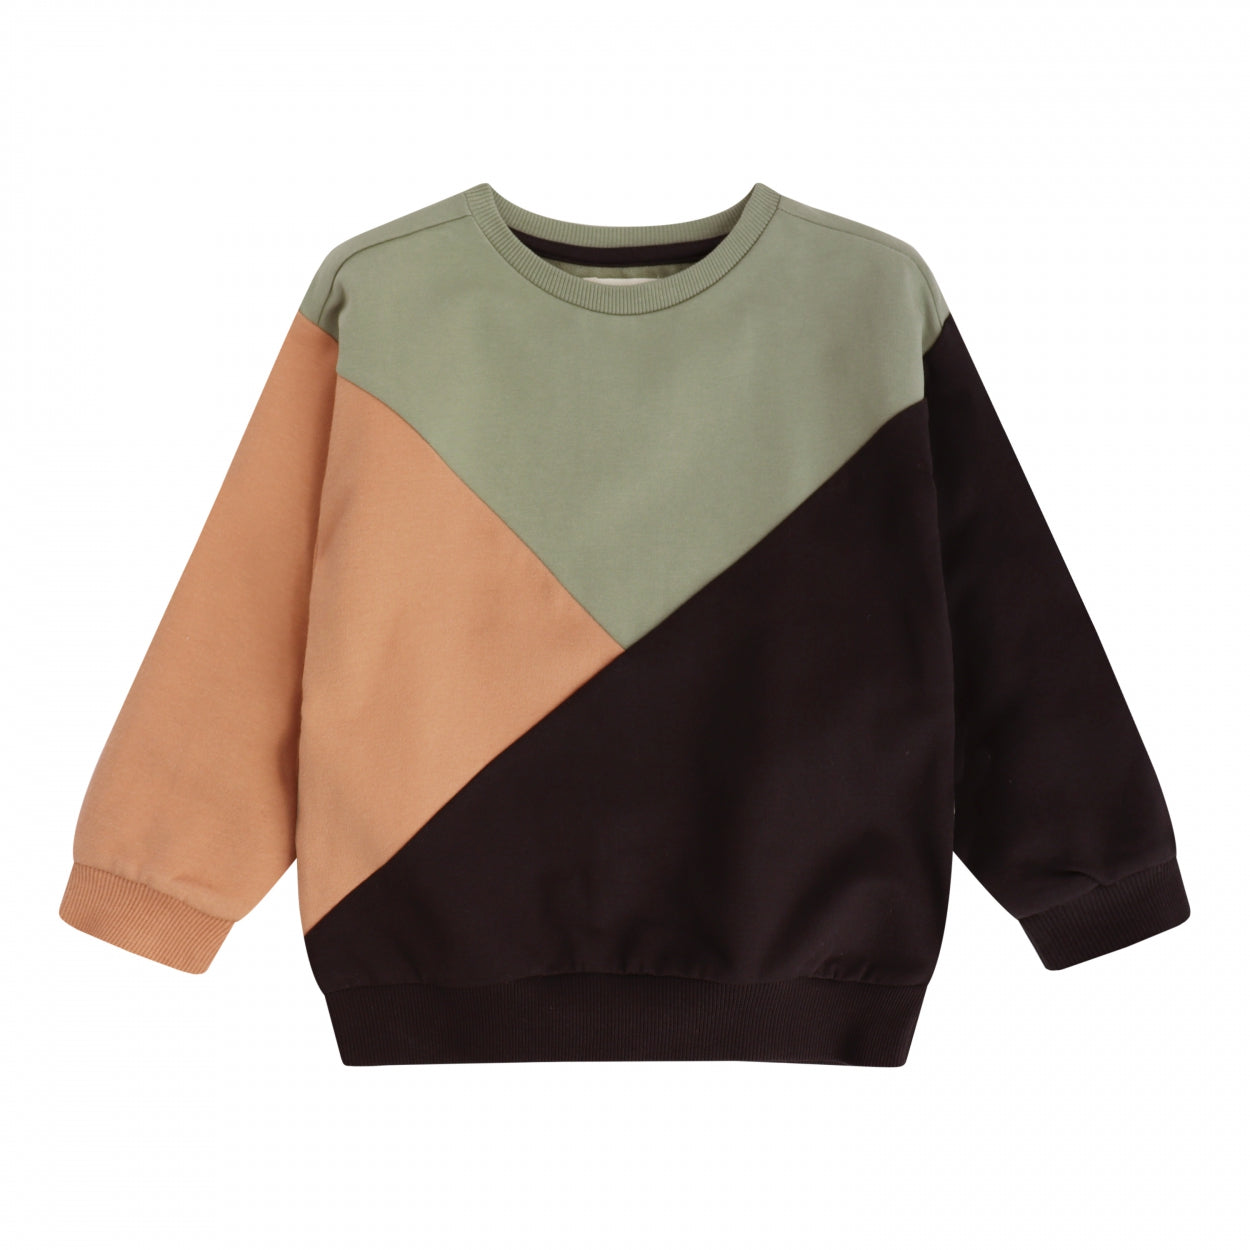 Jongens Sweater Colorblock | Blaze van Your Wishes in de kleur Dark Brown in maat 134-140.